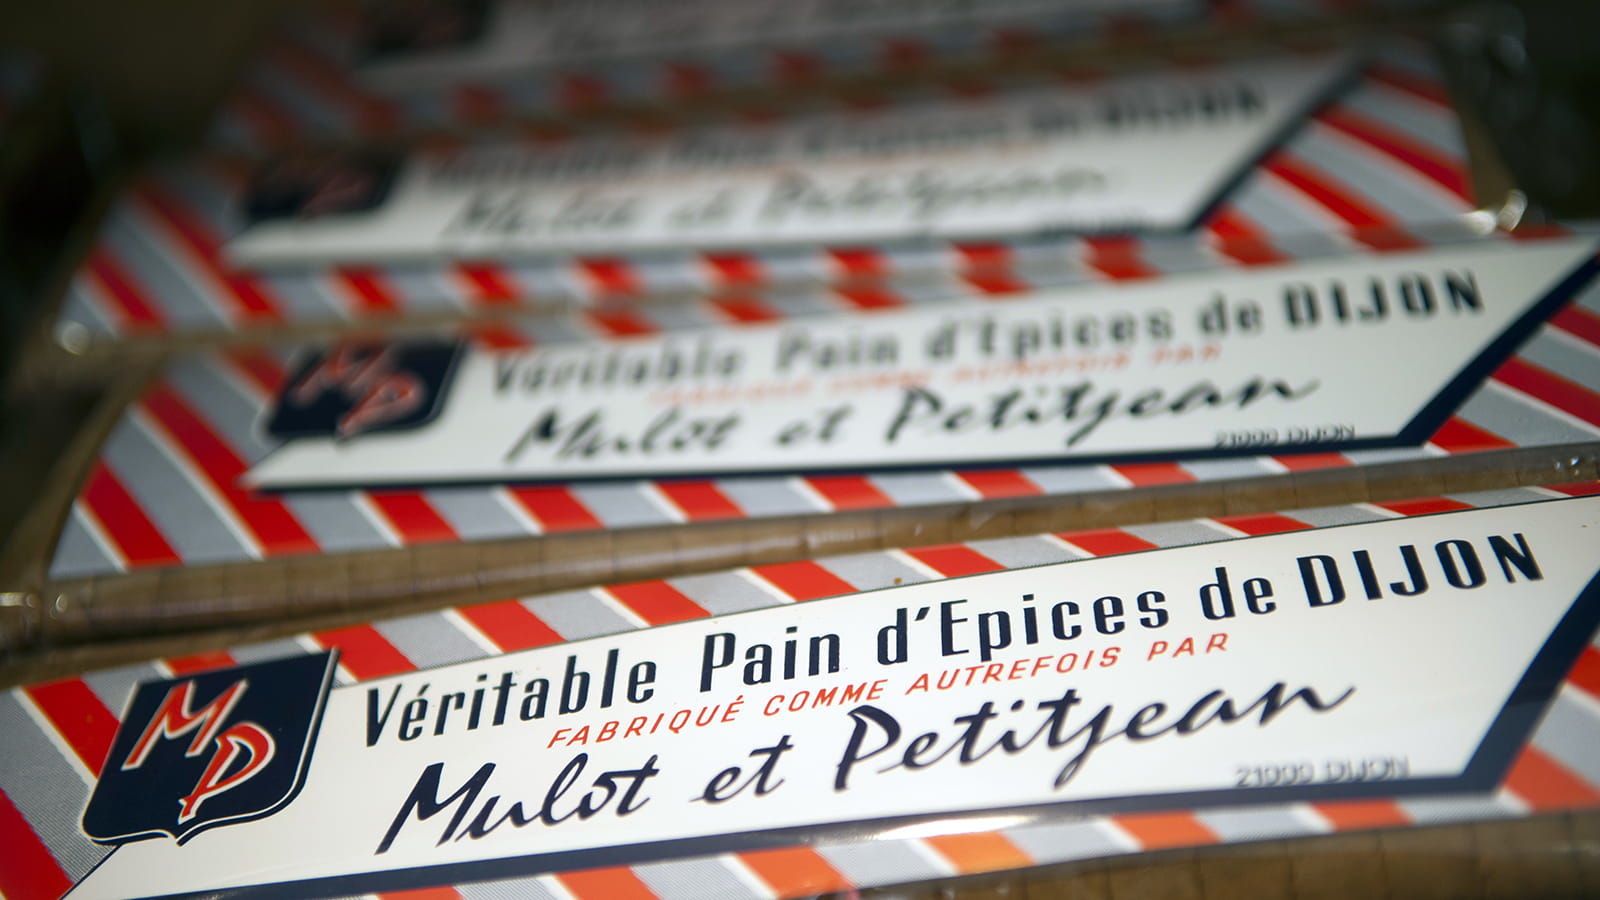 Pain d'épices Mulot & PetitJean